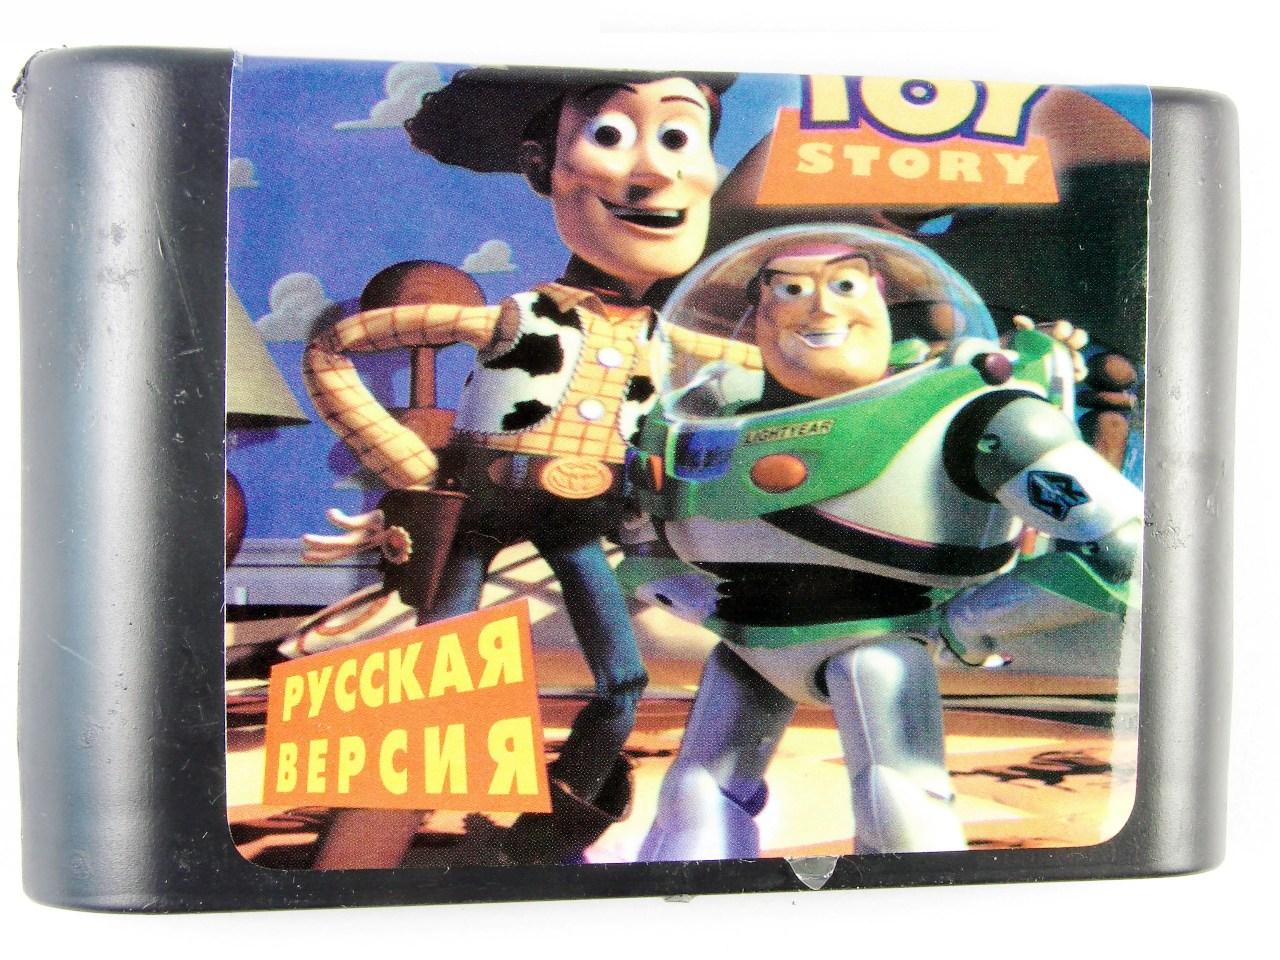 Картридж для Sega Toy Story (Sega)